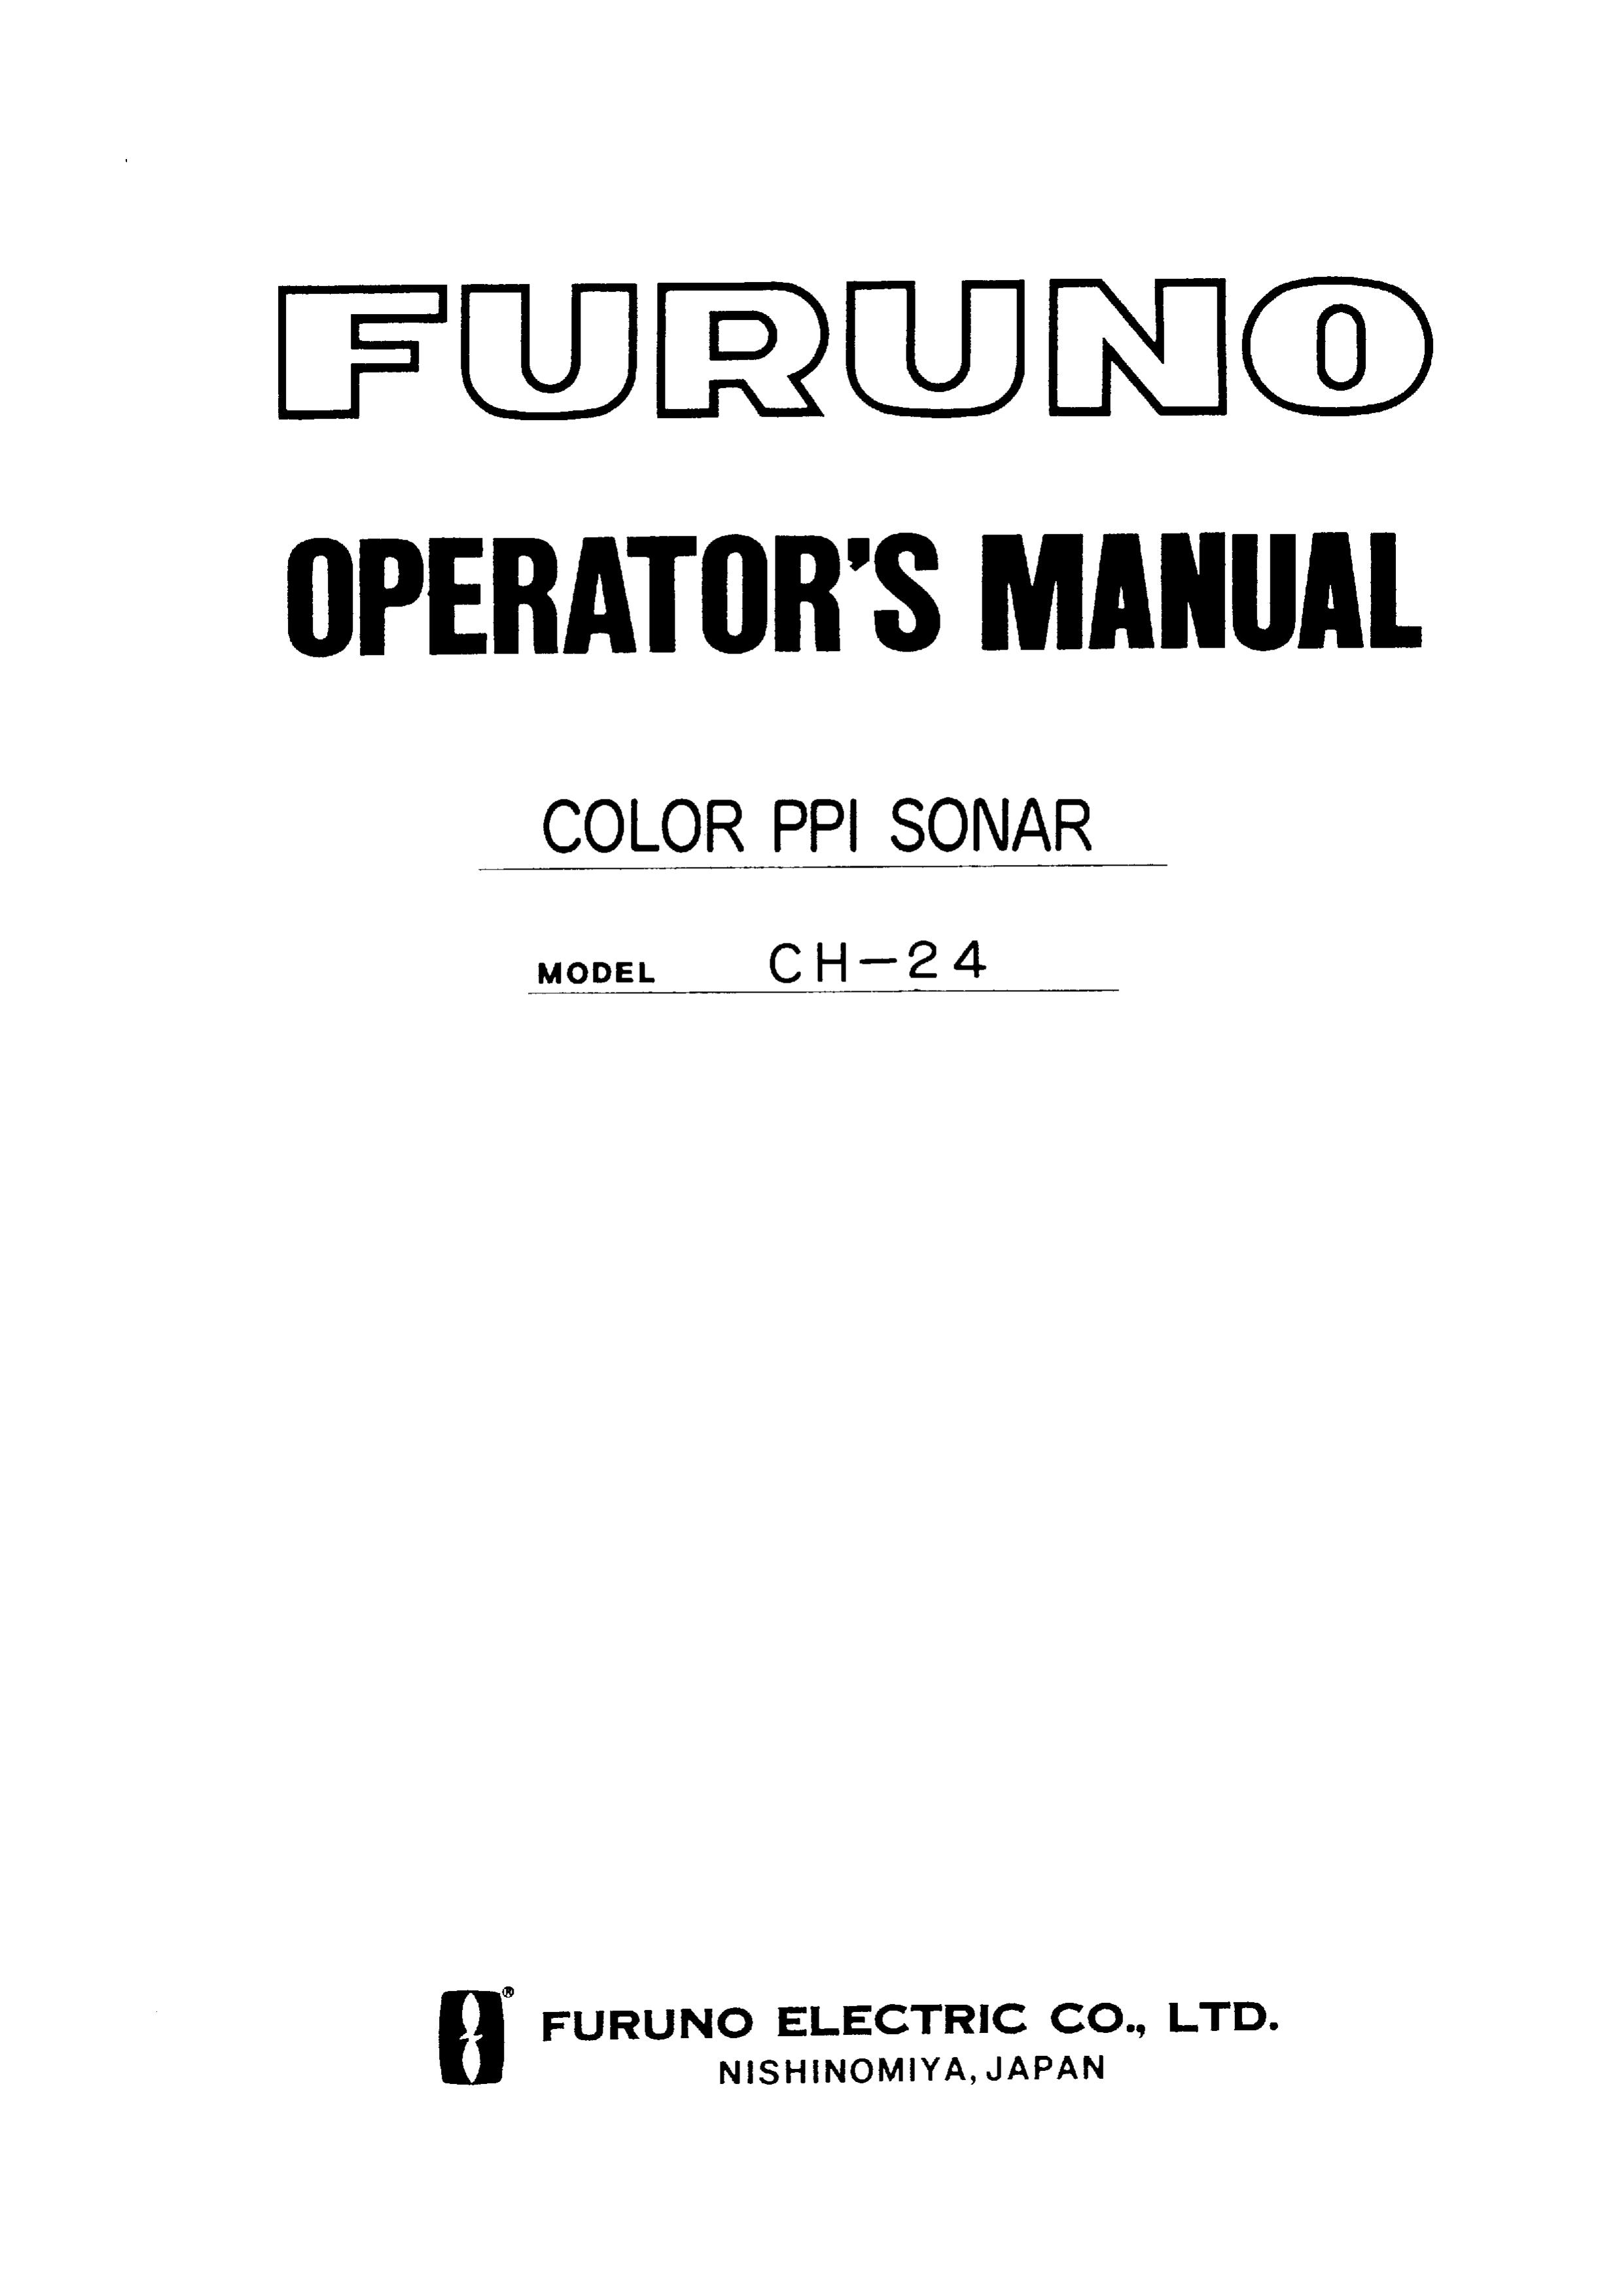 Furuno CH-24 SONAR User Manual